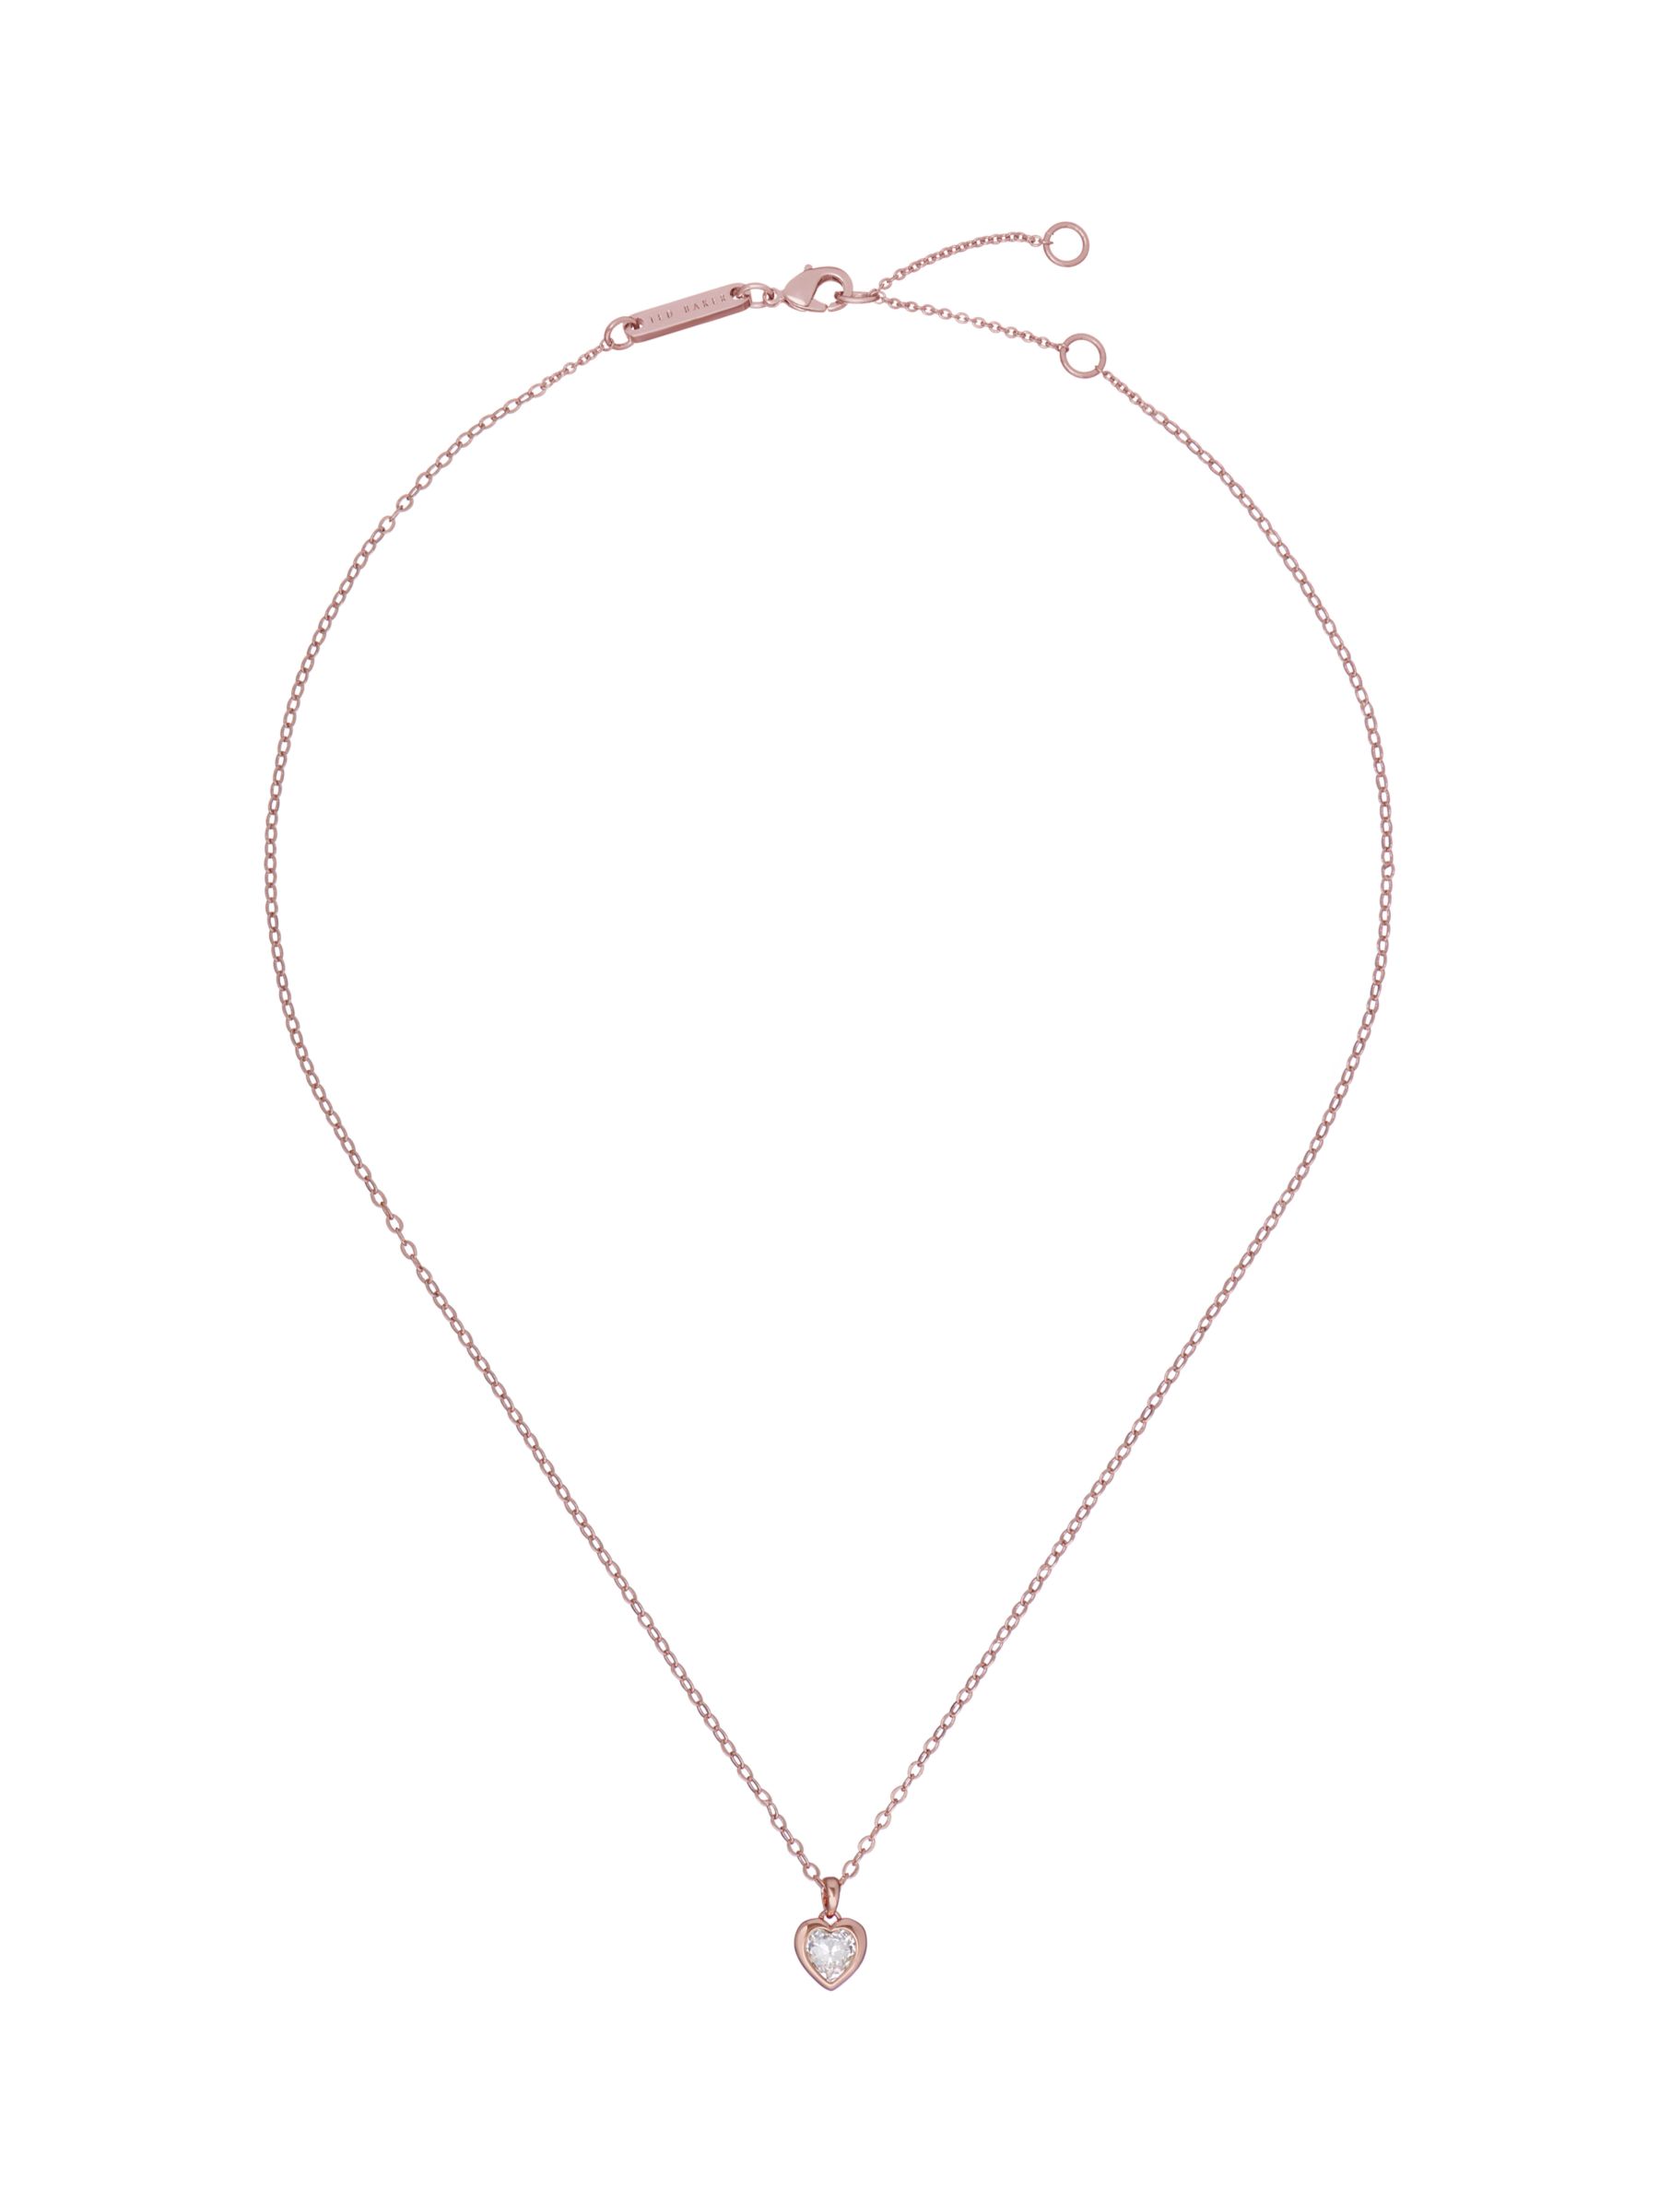 Ted Baker Hannela Crystal Heart Pendant Necklace, Rose Gold